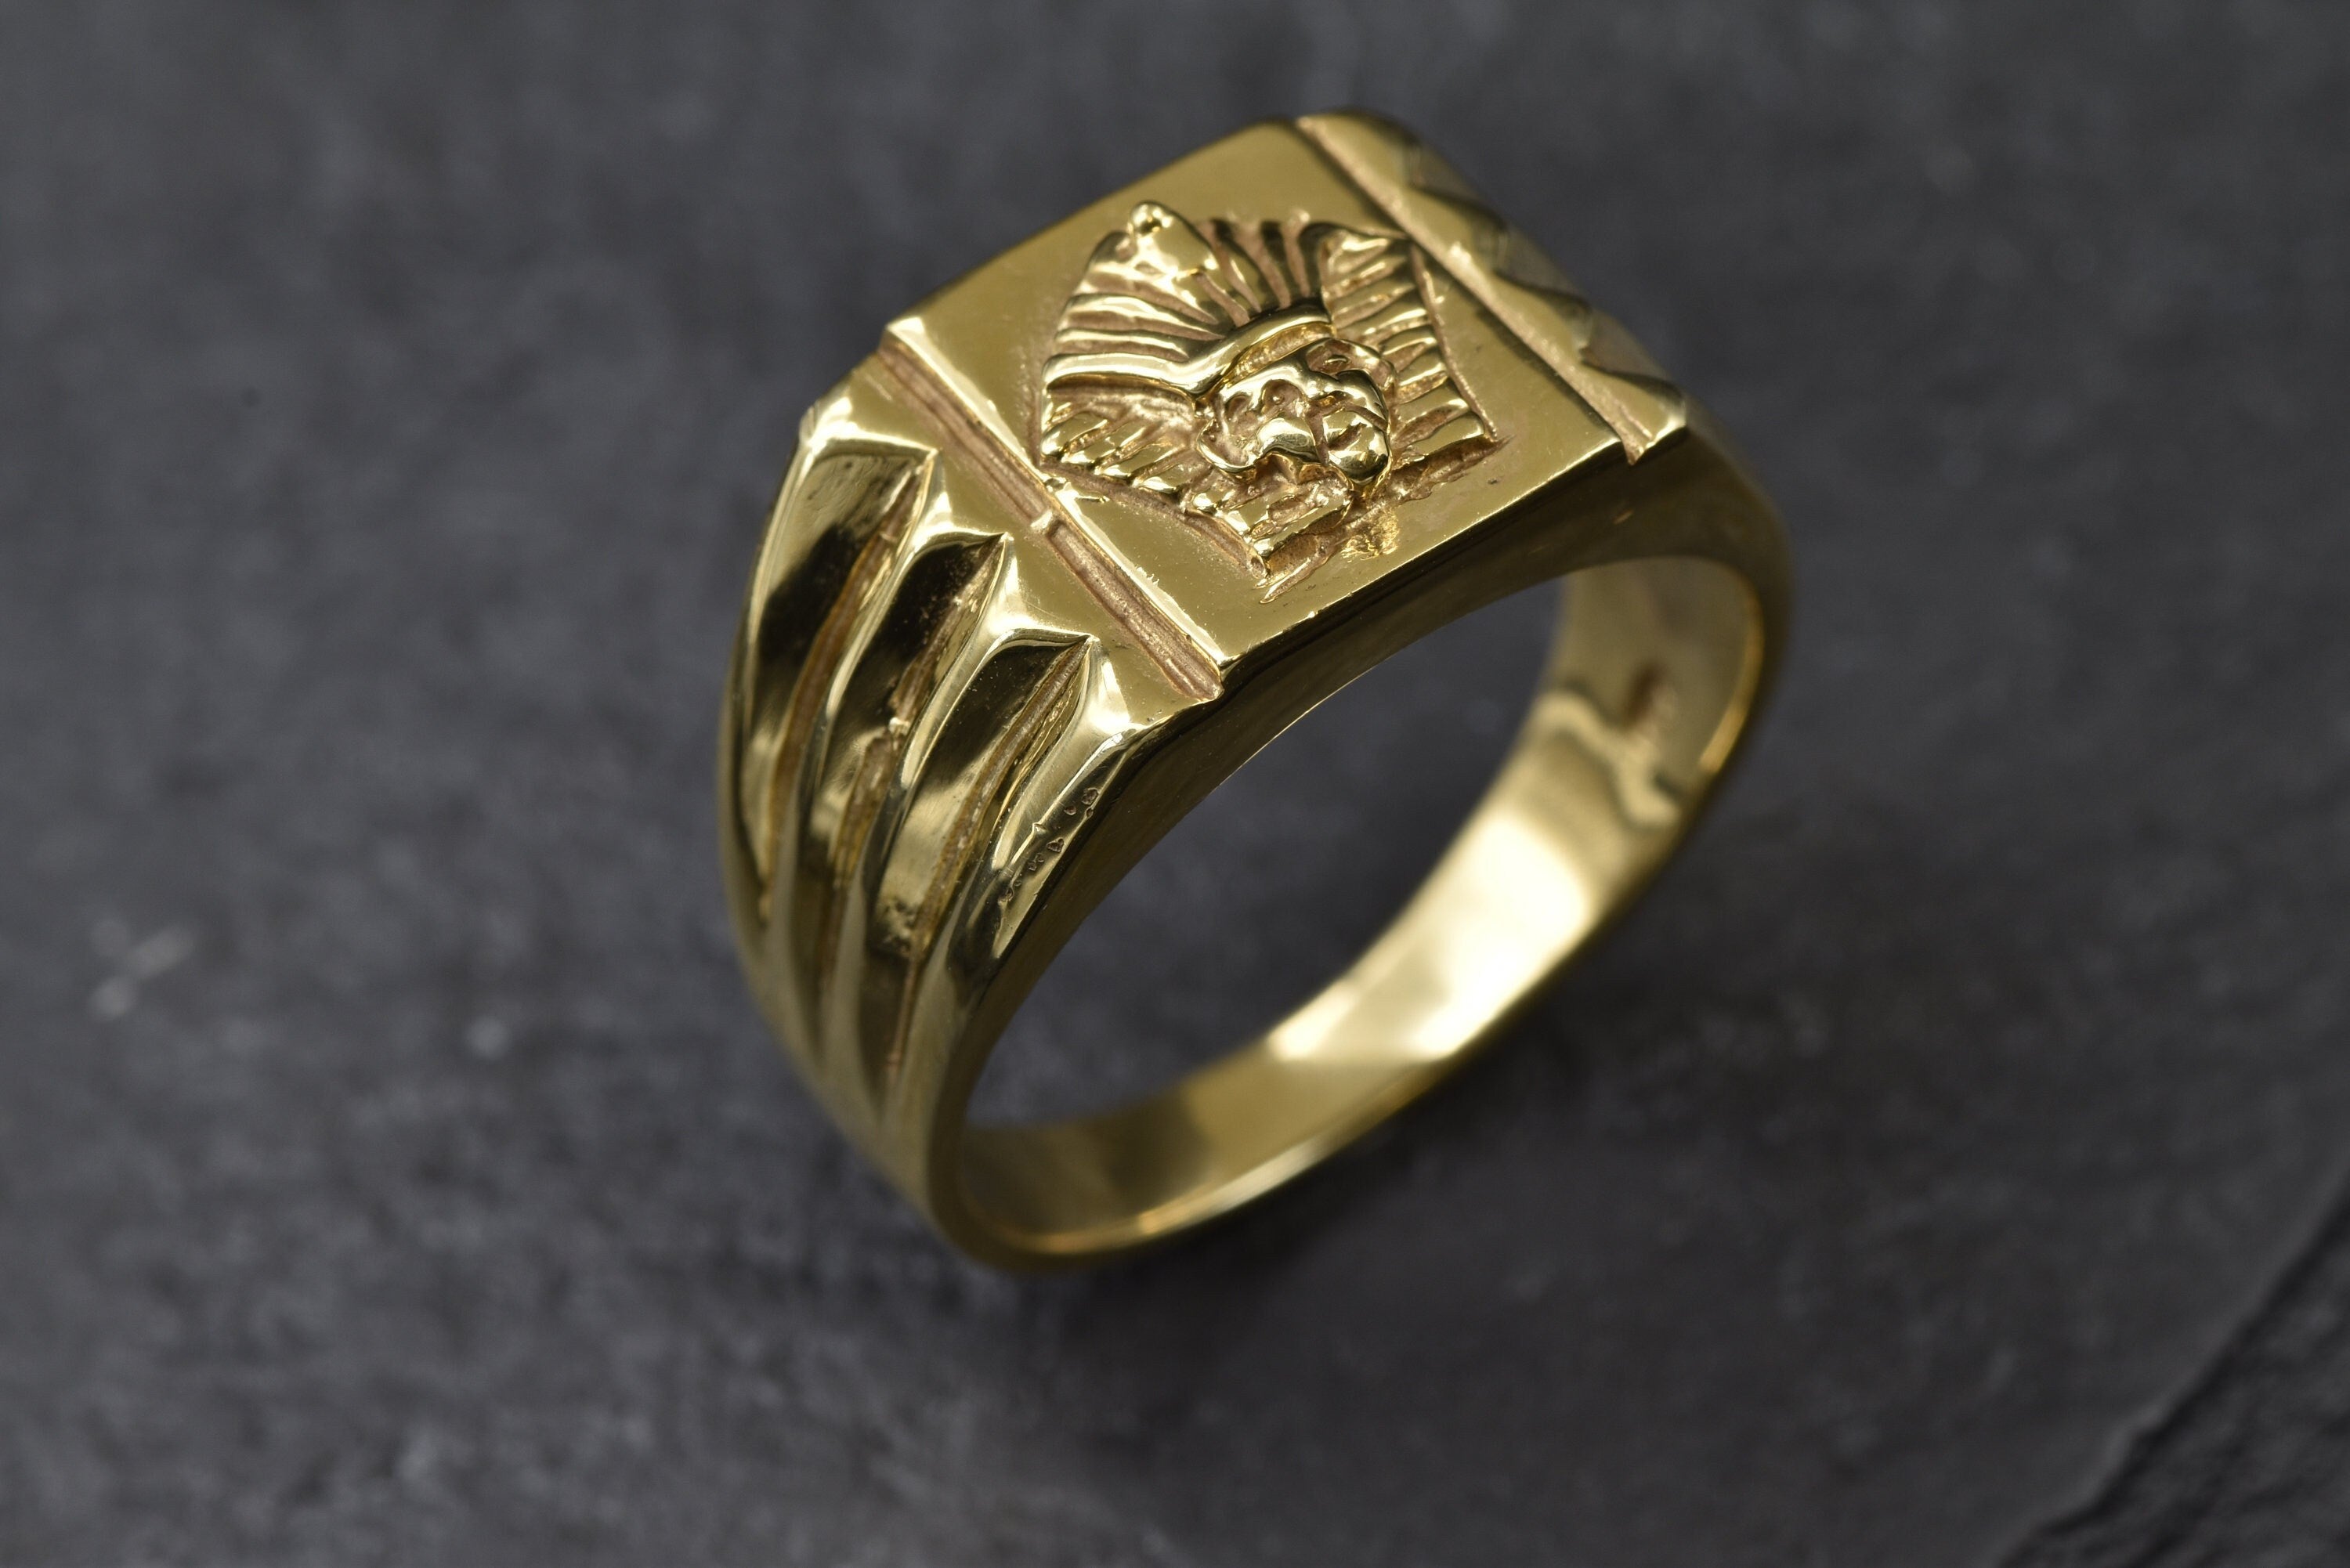 Gold Egyptian Ring, Symbolic Ring, Unisex Ring, Pharaoh Ring, Egyptian Style Ring, Gold Ring, Original Band, Handmade ring, Pharaoh Band